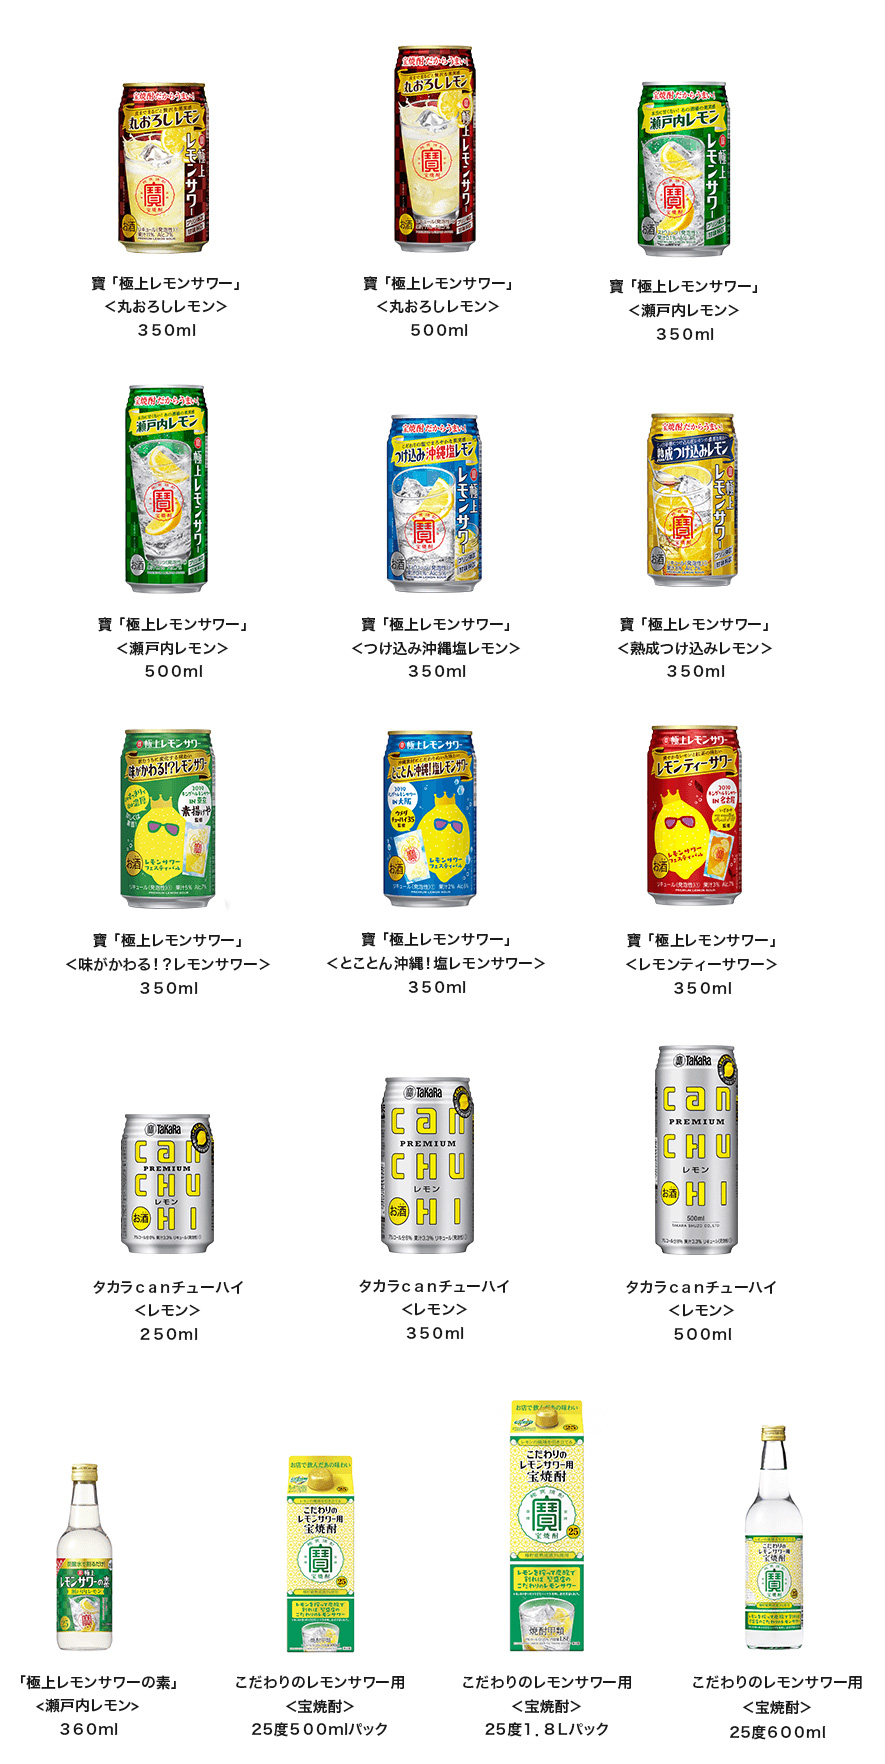 宝酒造 レモンサワー懸賞キャンペーン2020夏 対象商品